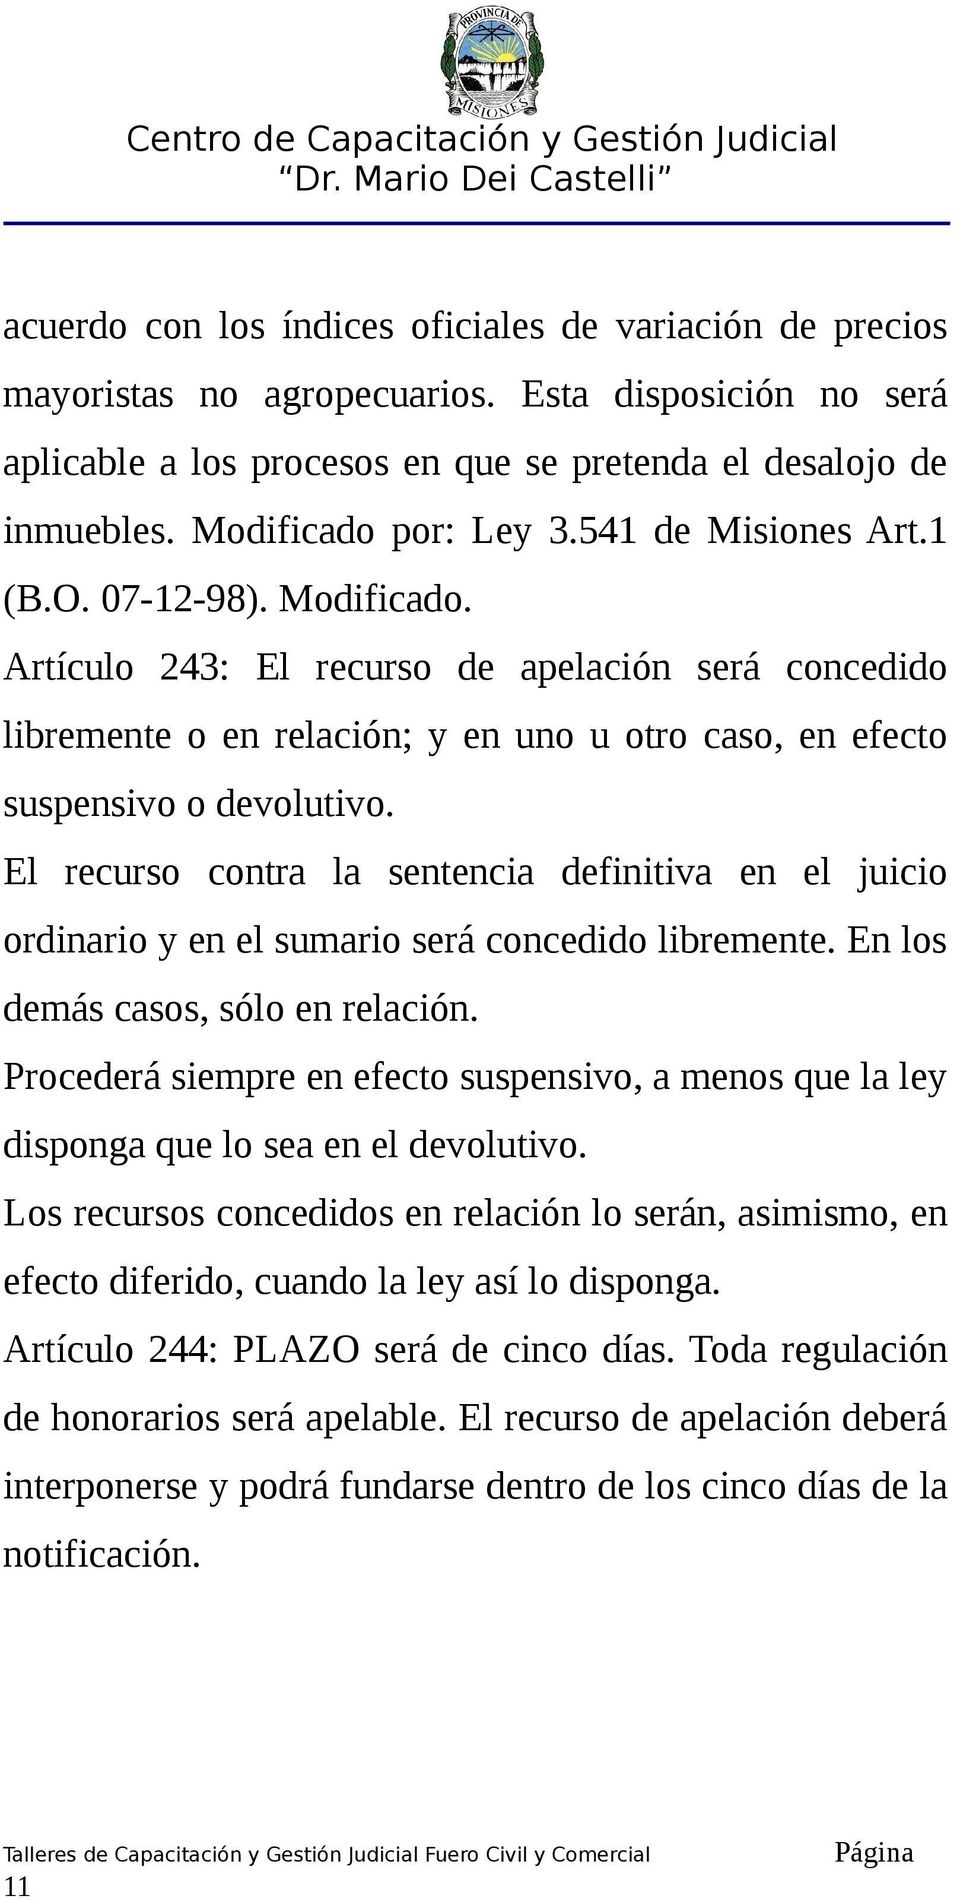 Artículo 243: El recurso de apelación será concedido libremente o en relación; y en uno u otro caso, en efecto suspensivo o devolutivo.